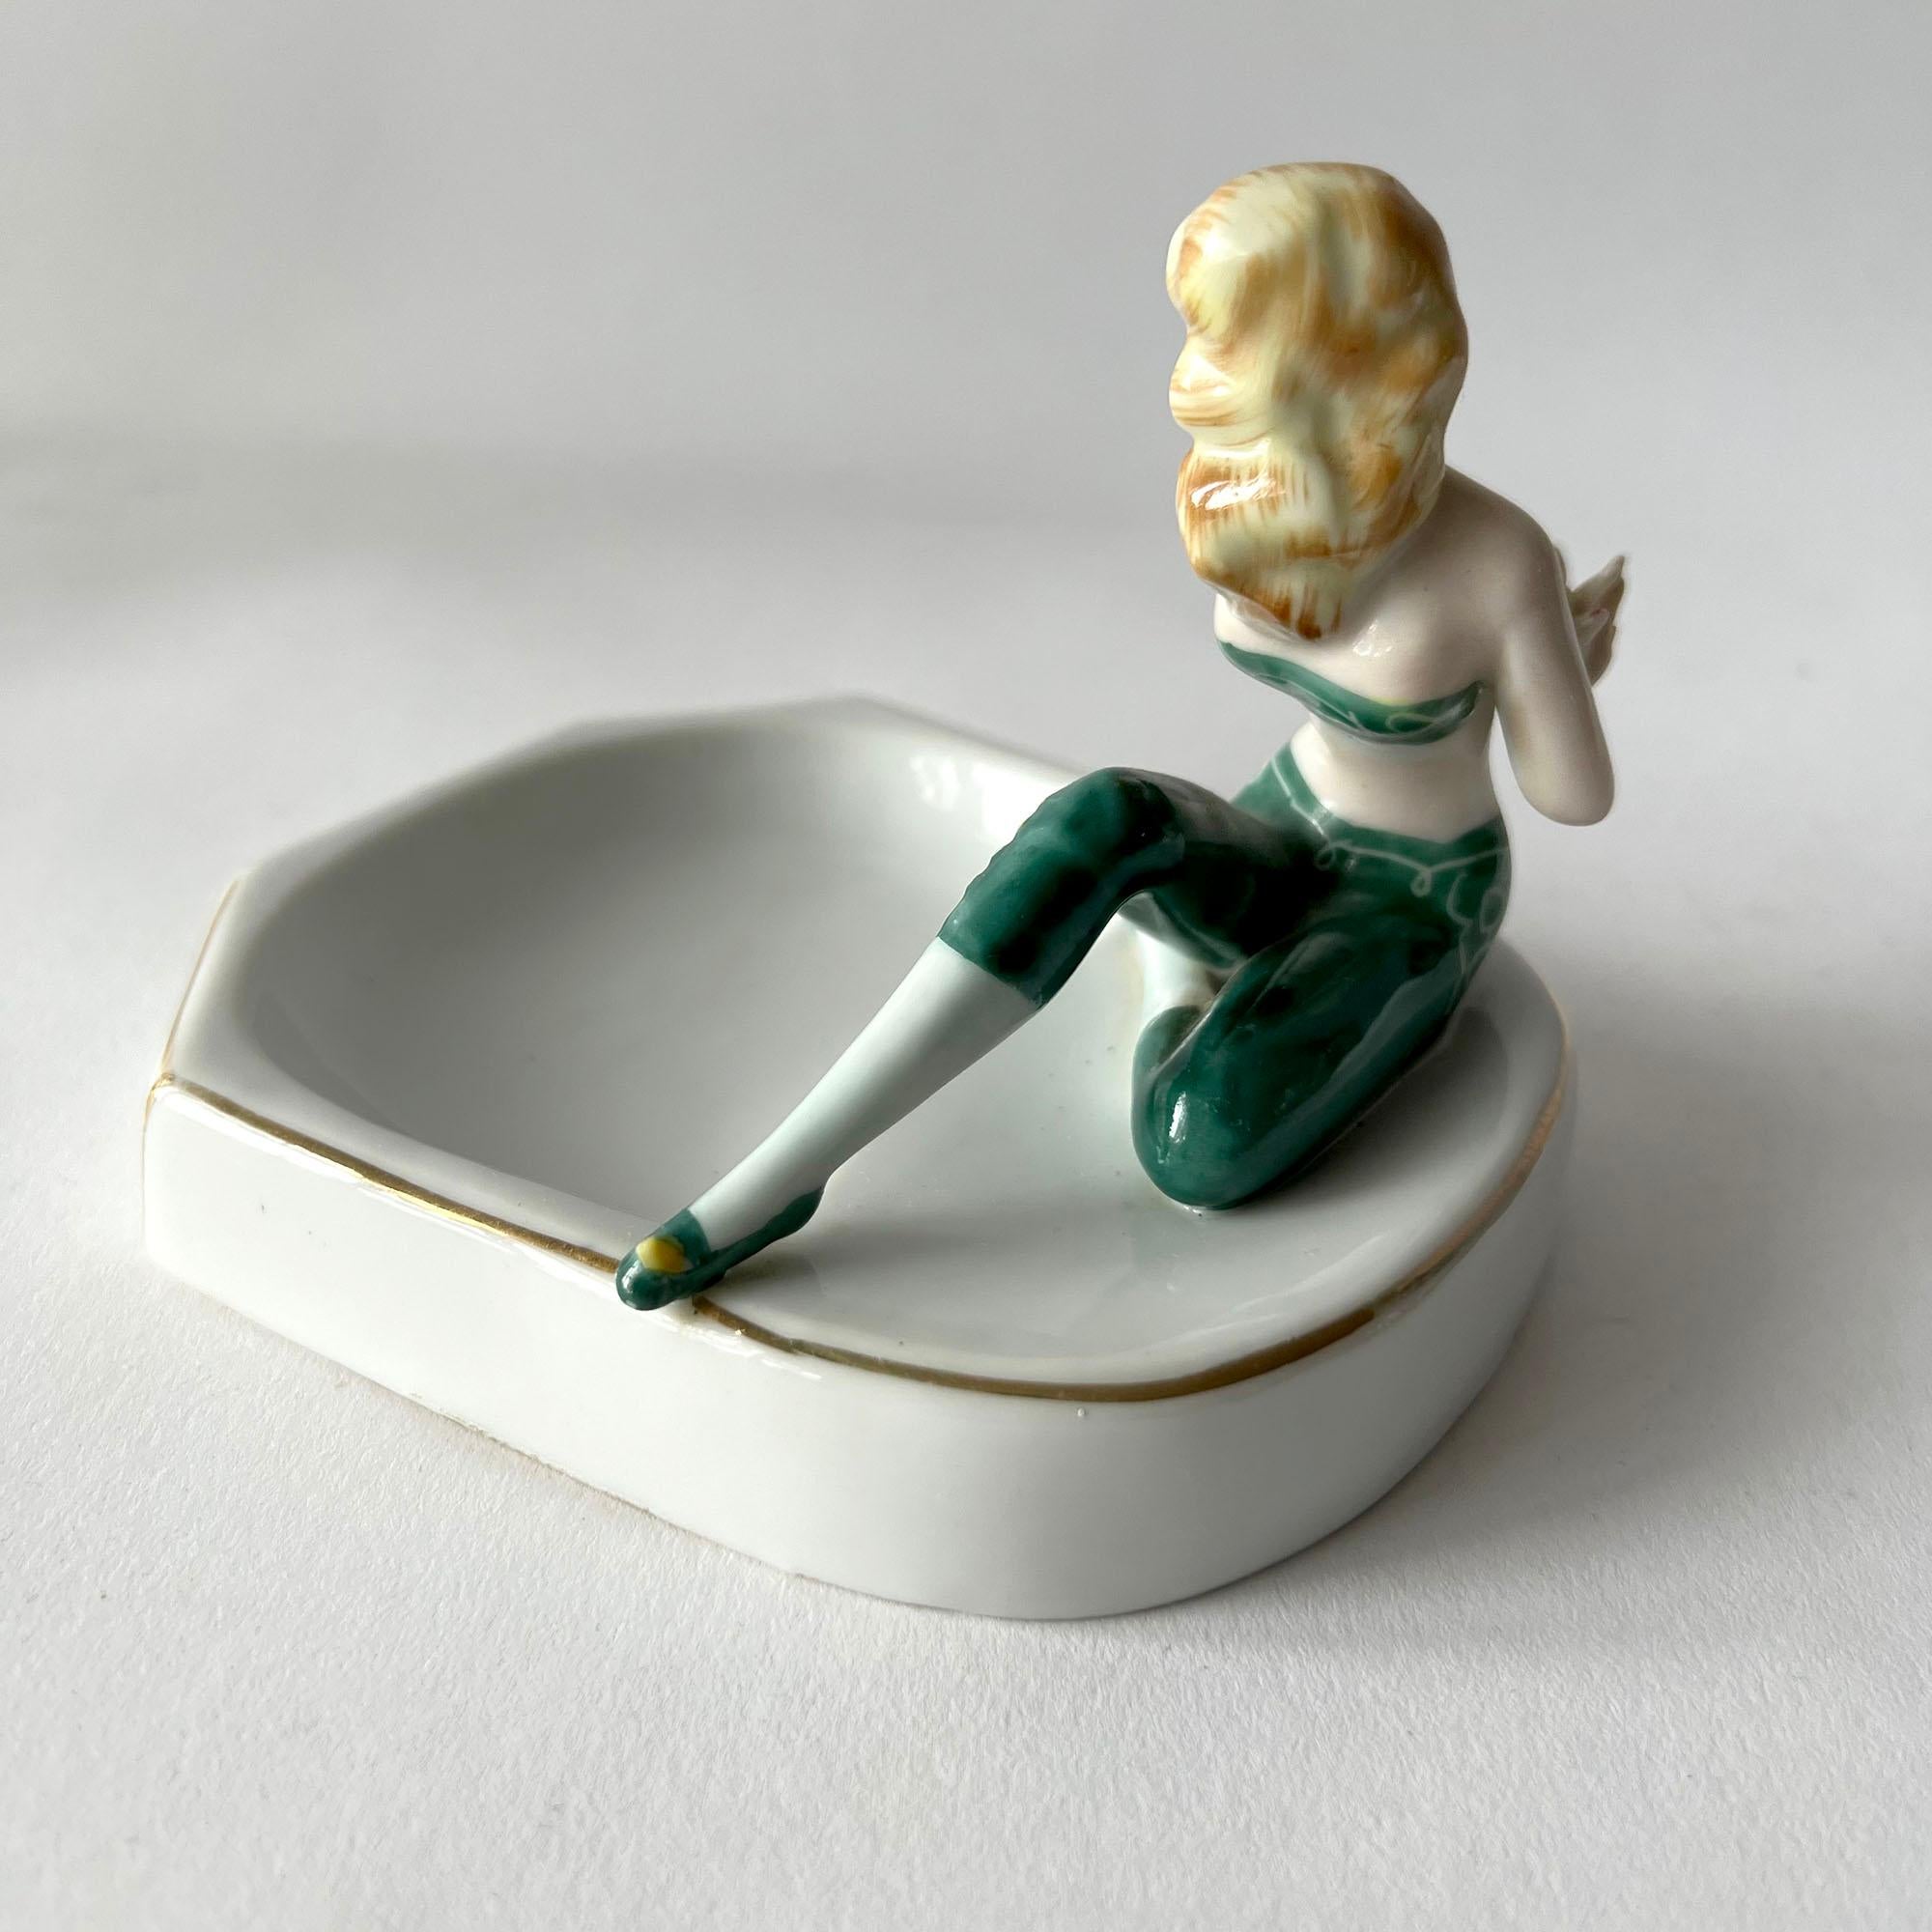 Risqué porcelain pin up girl ashtray or vide-poche, circa 1950's. Piece measures 3.75